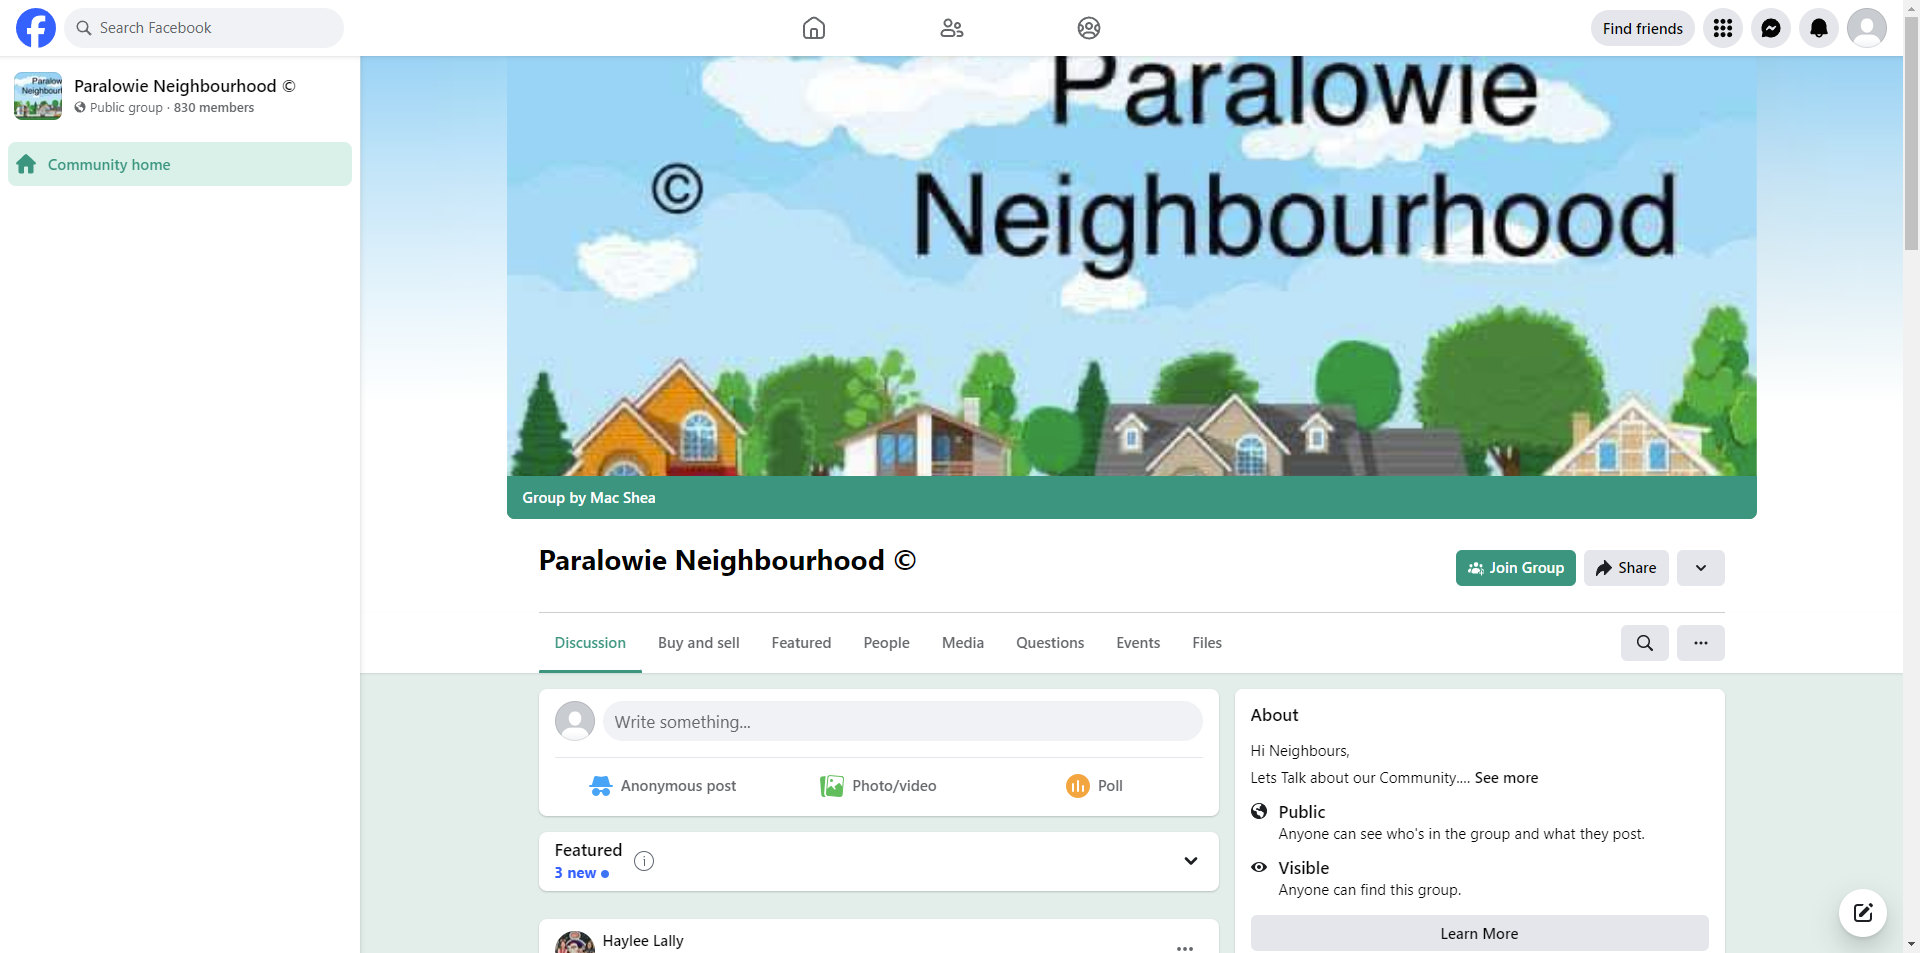 Paralowie Neighbourhood